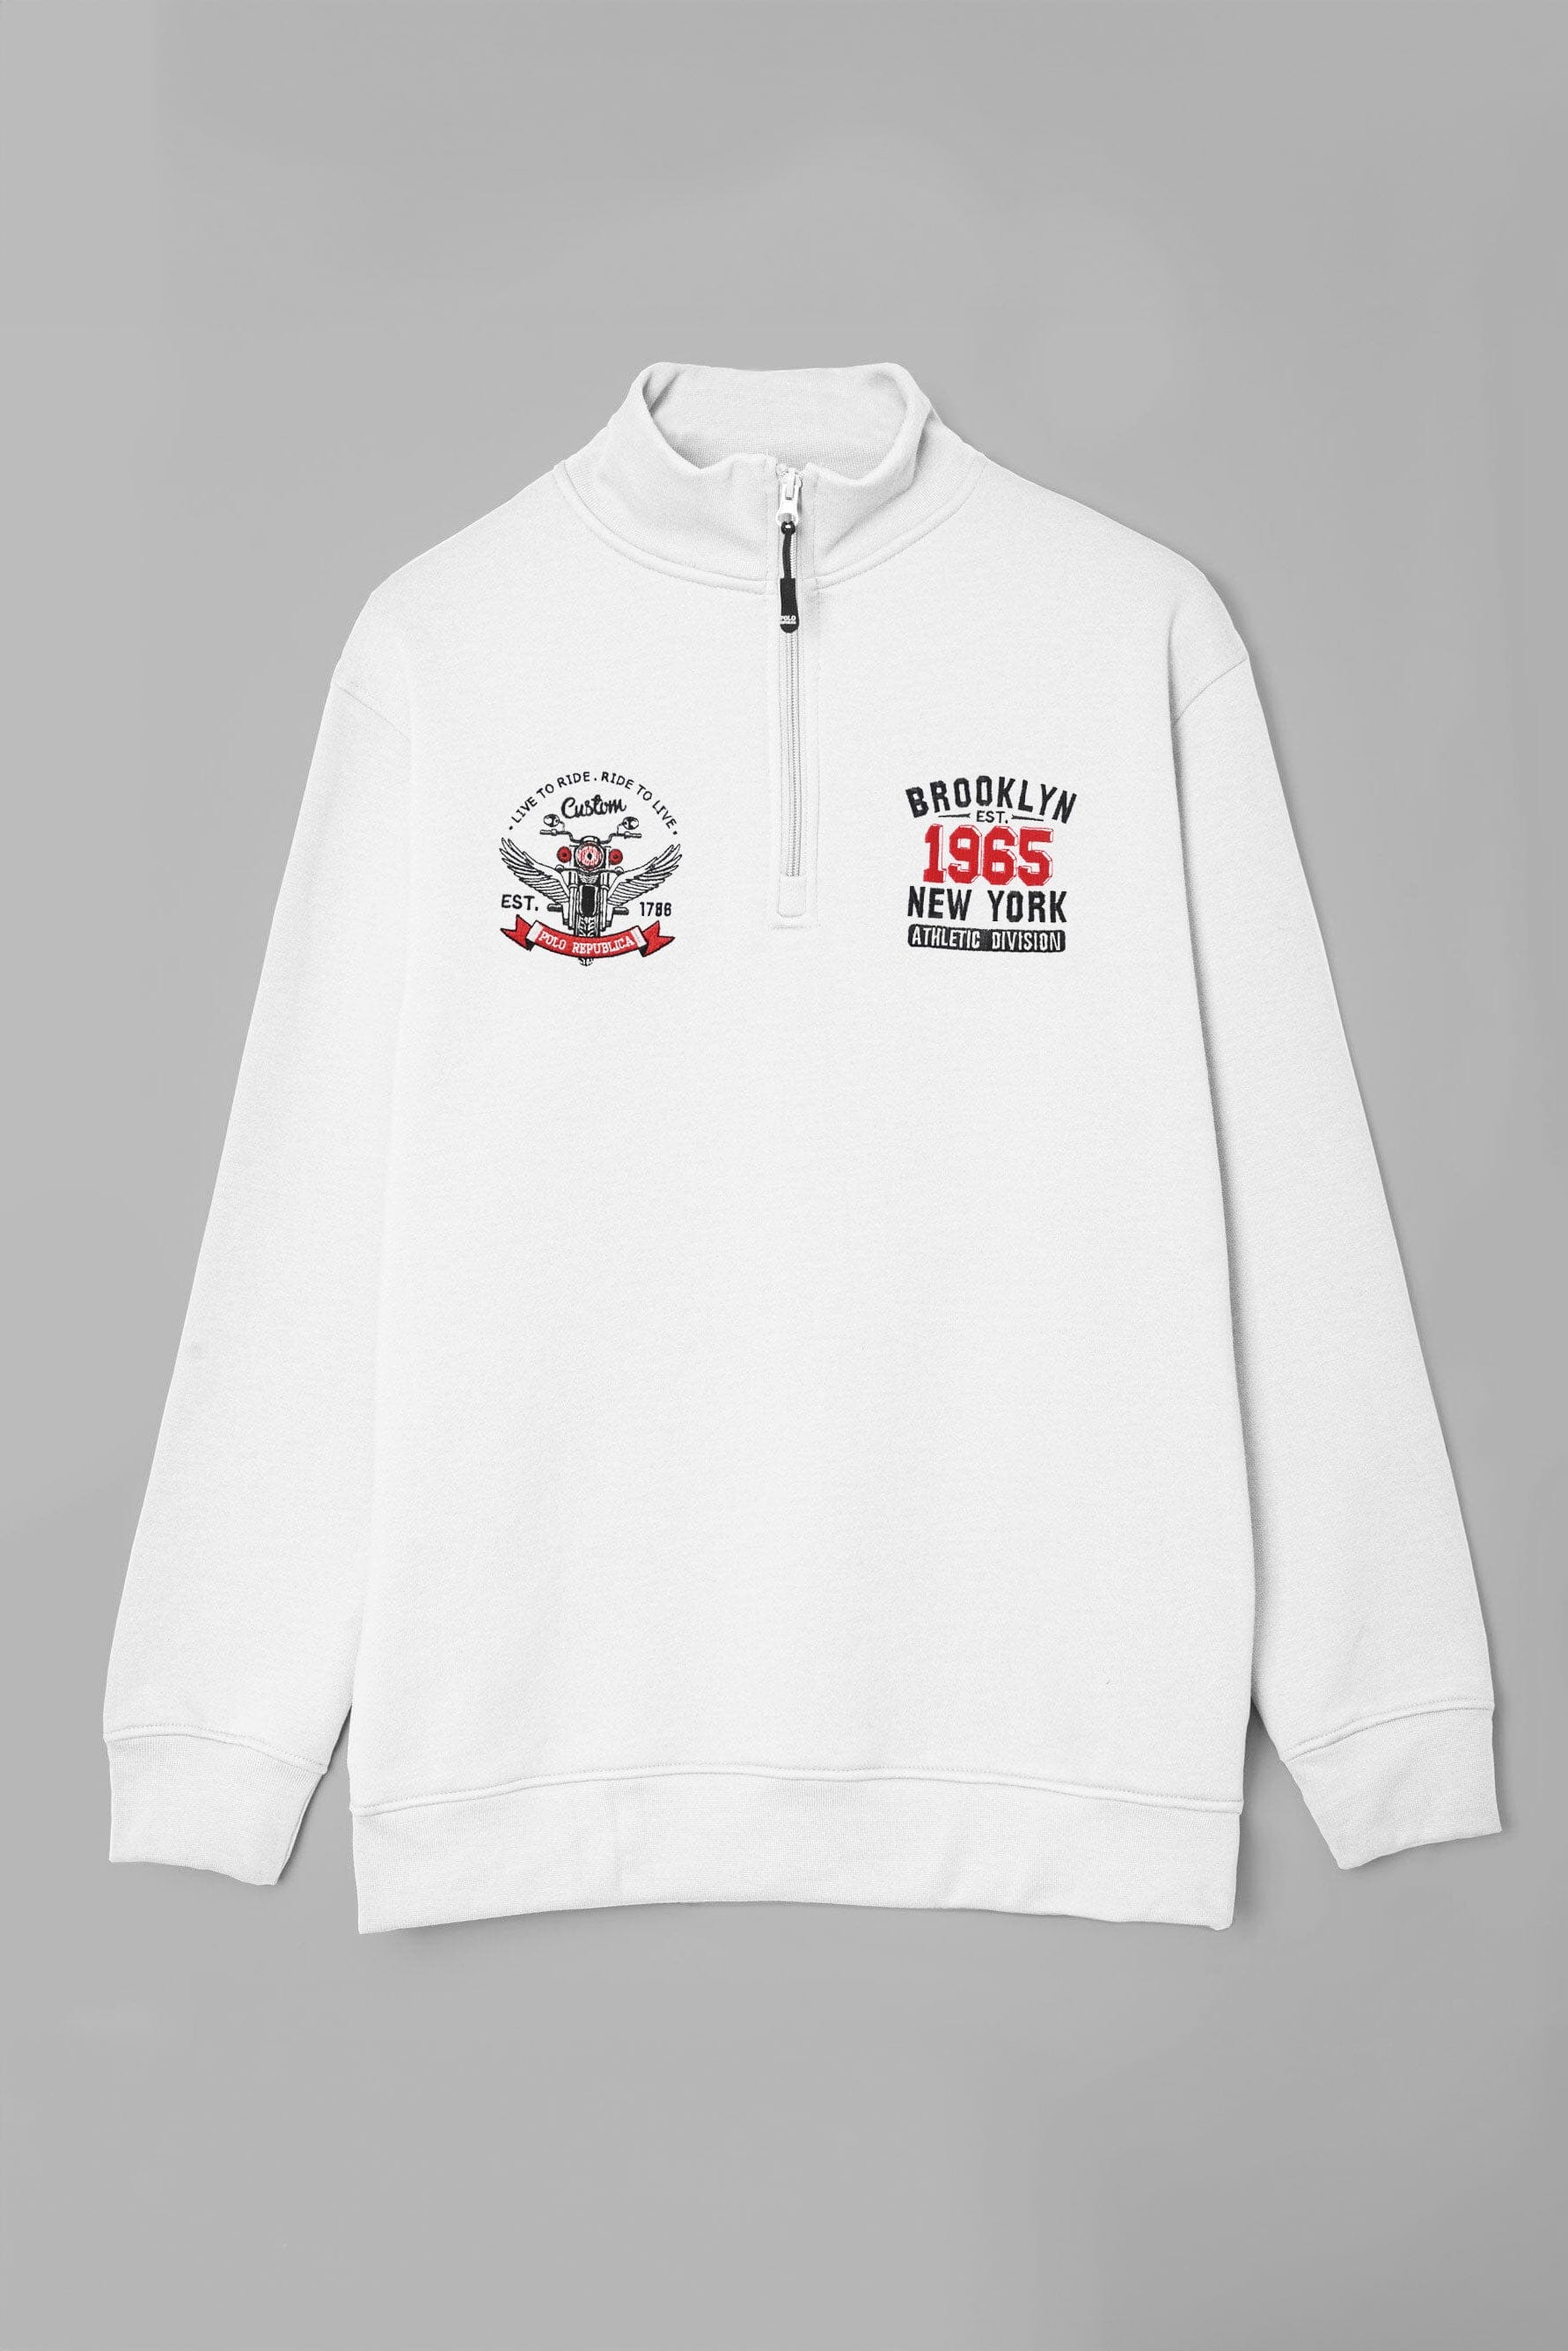 Polo Republica Men's Brooklyn 1965 Embroidered Quarter Zipper Sweat Shirt Men's Sweat Shirt Polo Republica 